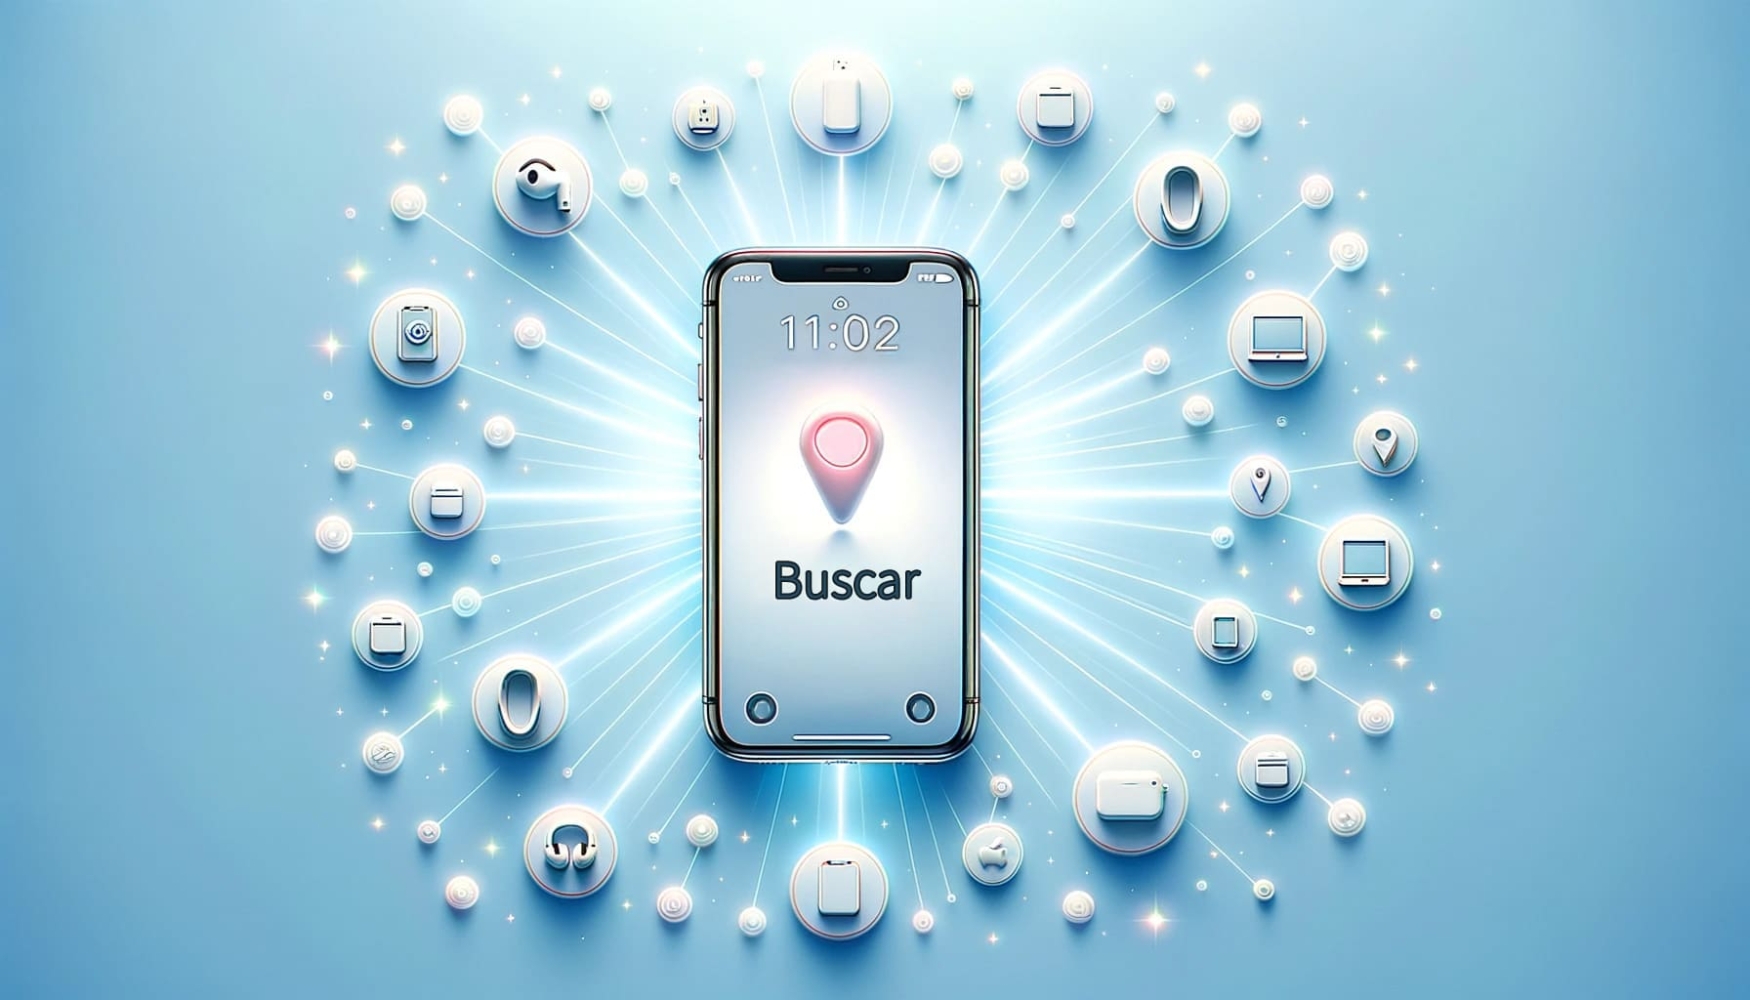 Um iPhone com a interface "Find My" - Buscar conectada por raios radiantes a ícones de outros dispositivos Apple em um fundo azul claro